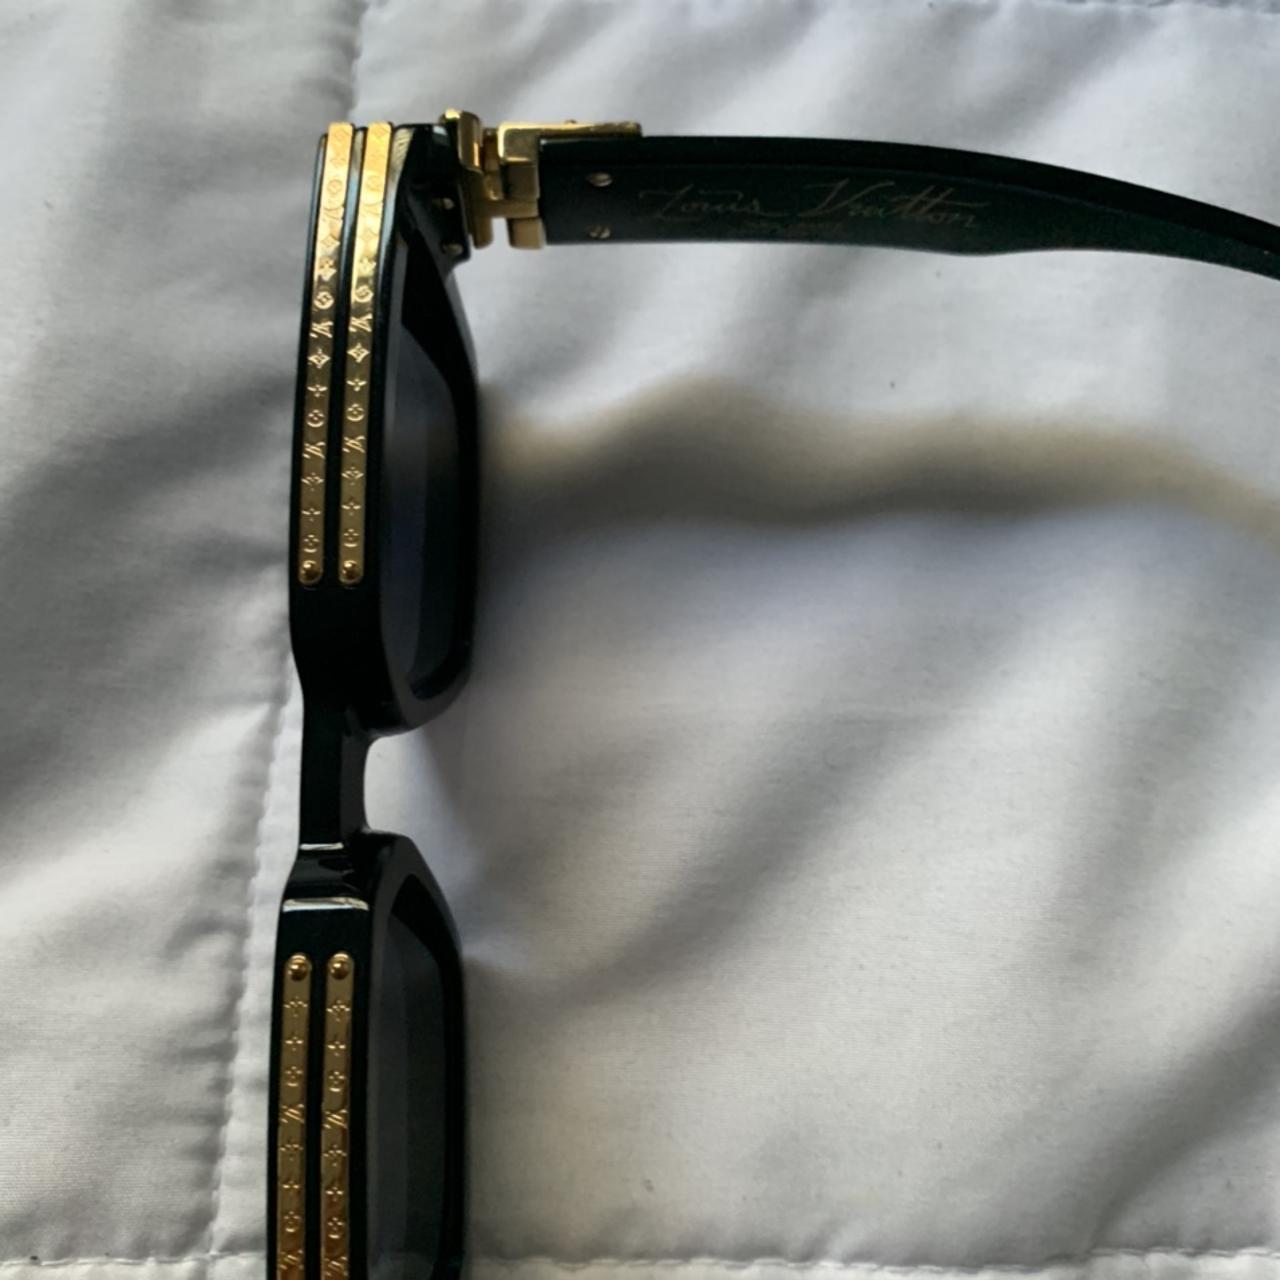 SOLD OUT Louis Vuitton 1.1 Millionaire Sunglasses - Depop